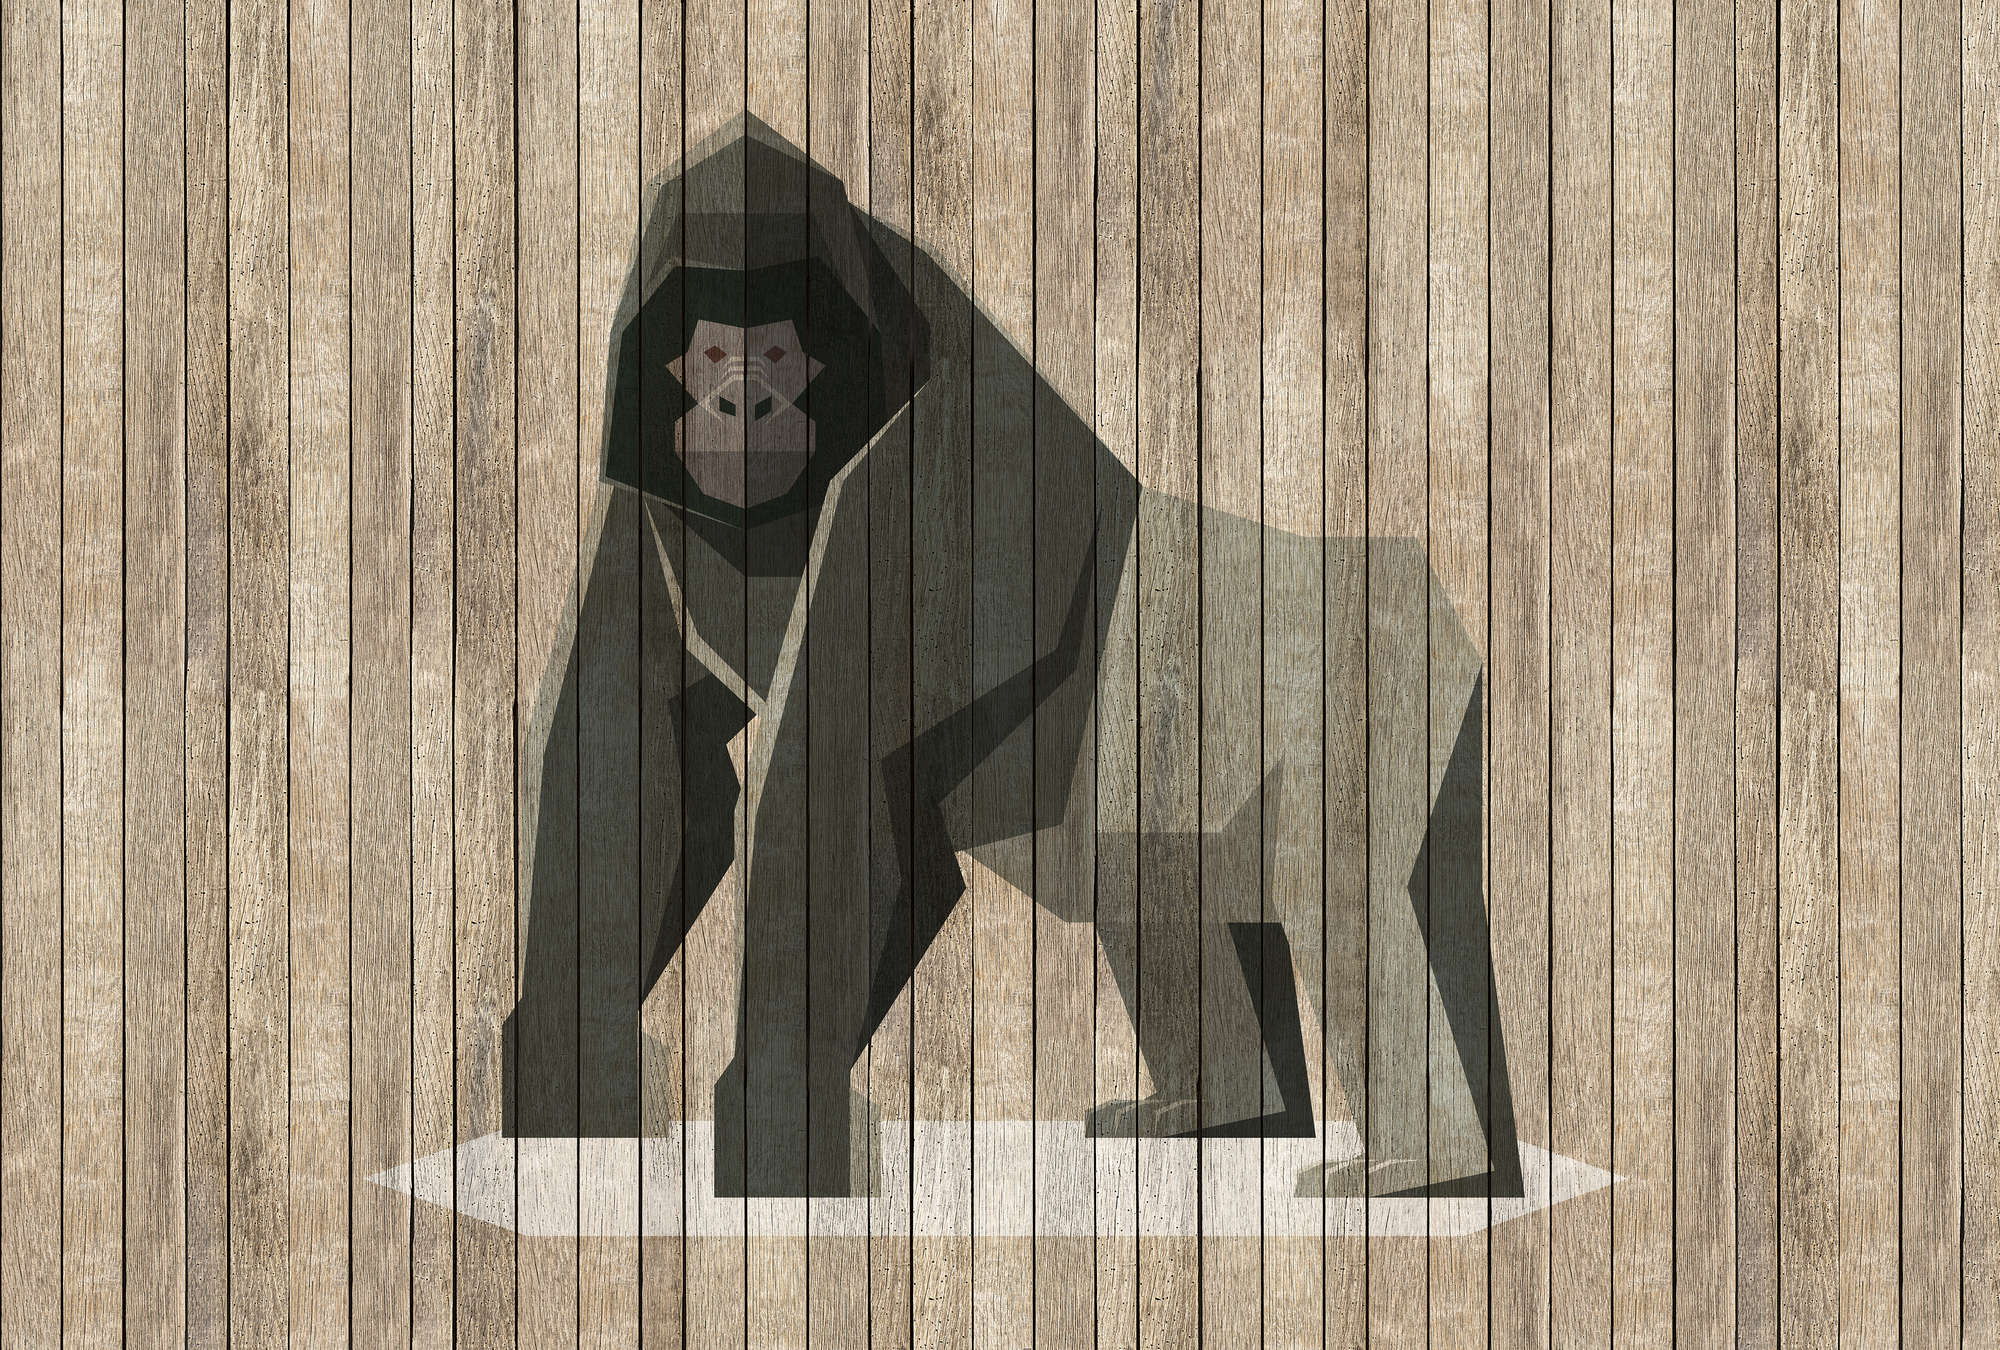             Born to Be Wild 3 - Digital behang Gorilla on Board Wall - Houten Panelen Breedt - Beige, Bruin | Textuur Niet-geweven
        